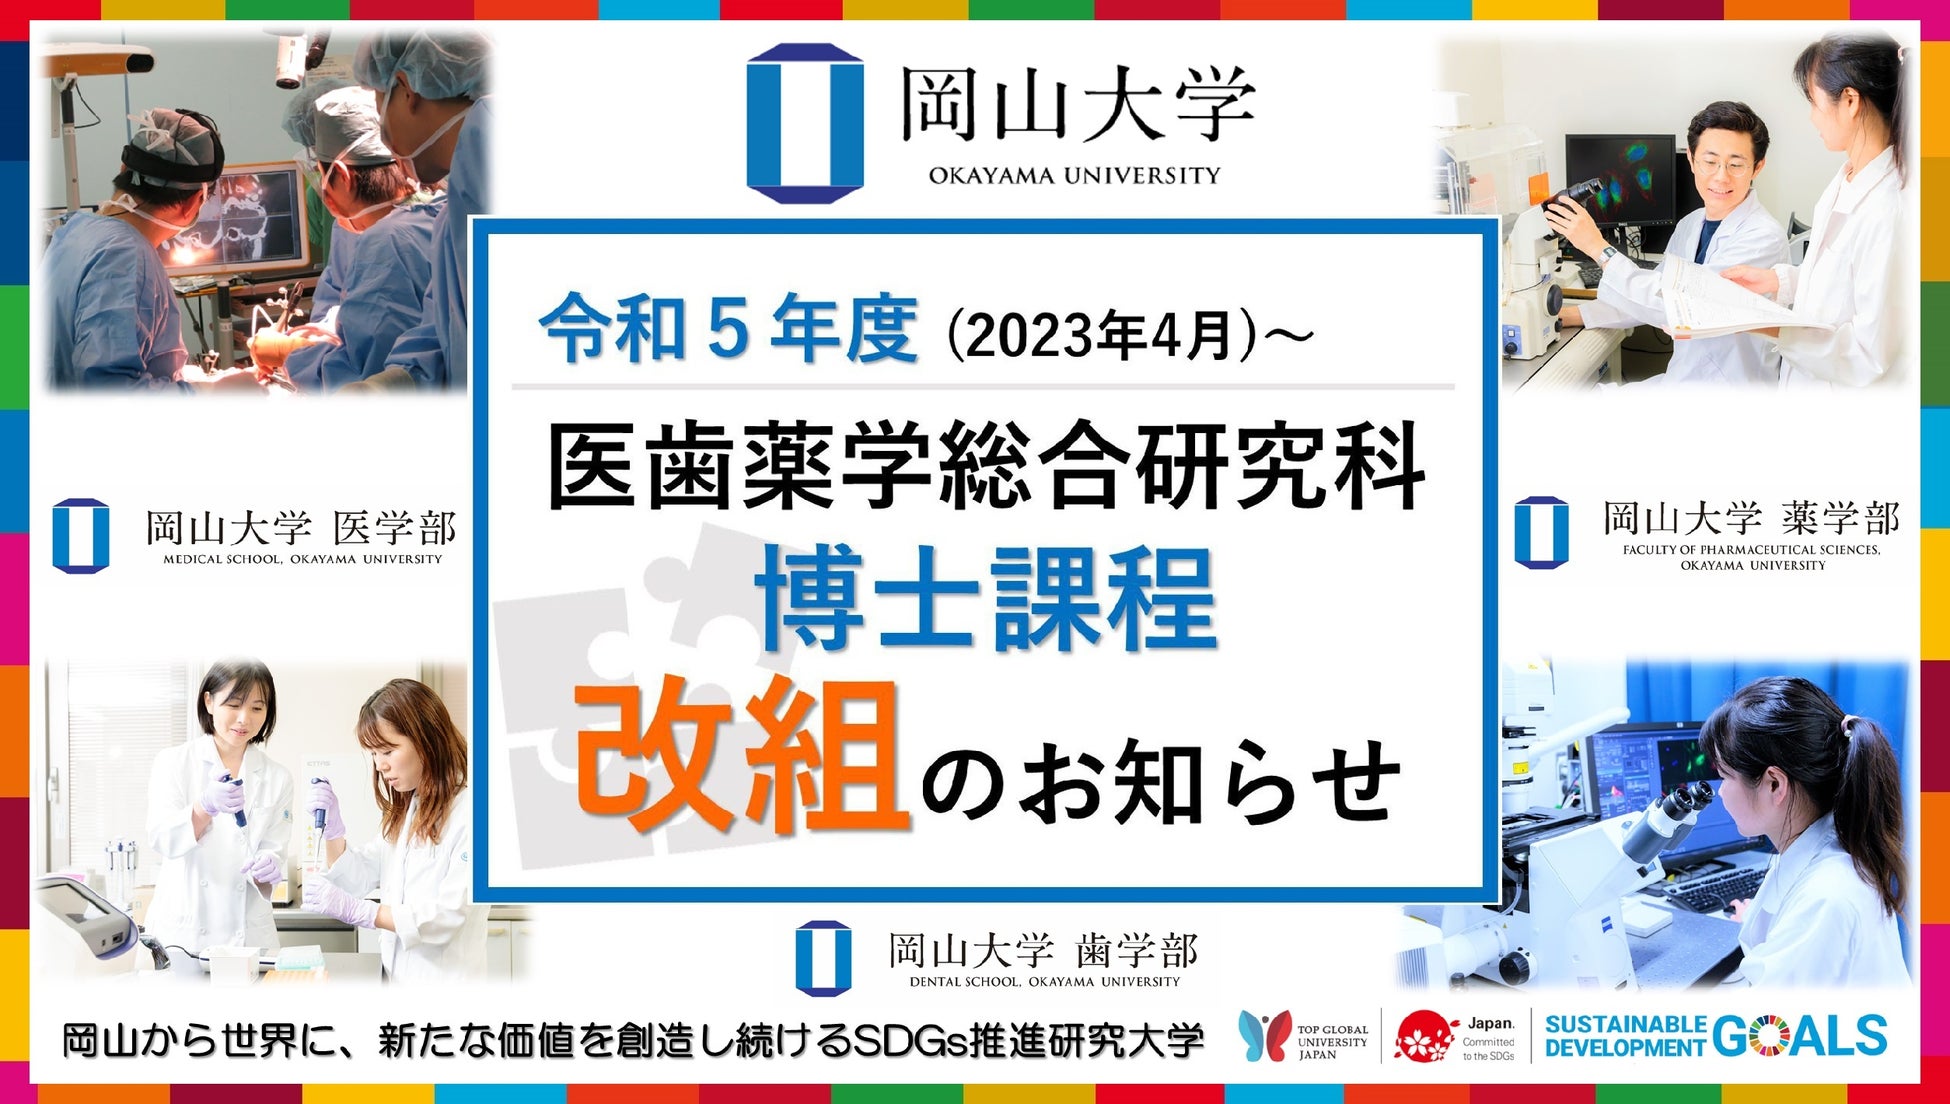 【岡山大学】大学院医歯薬学総合研究科 博士課程 令和5年4月から“一専攻化”へのサブ画像1